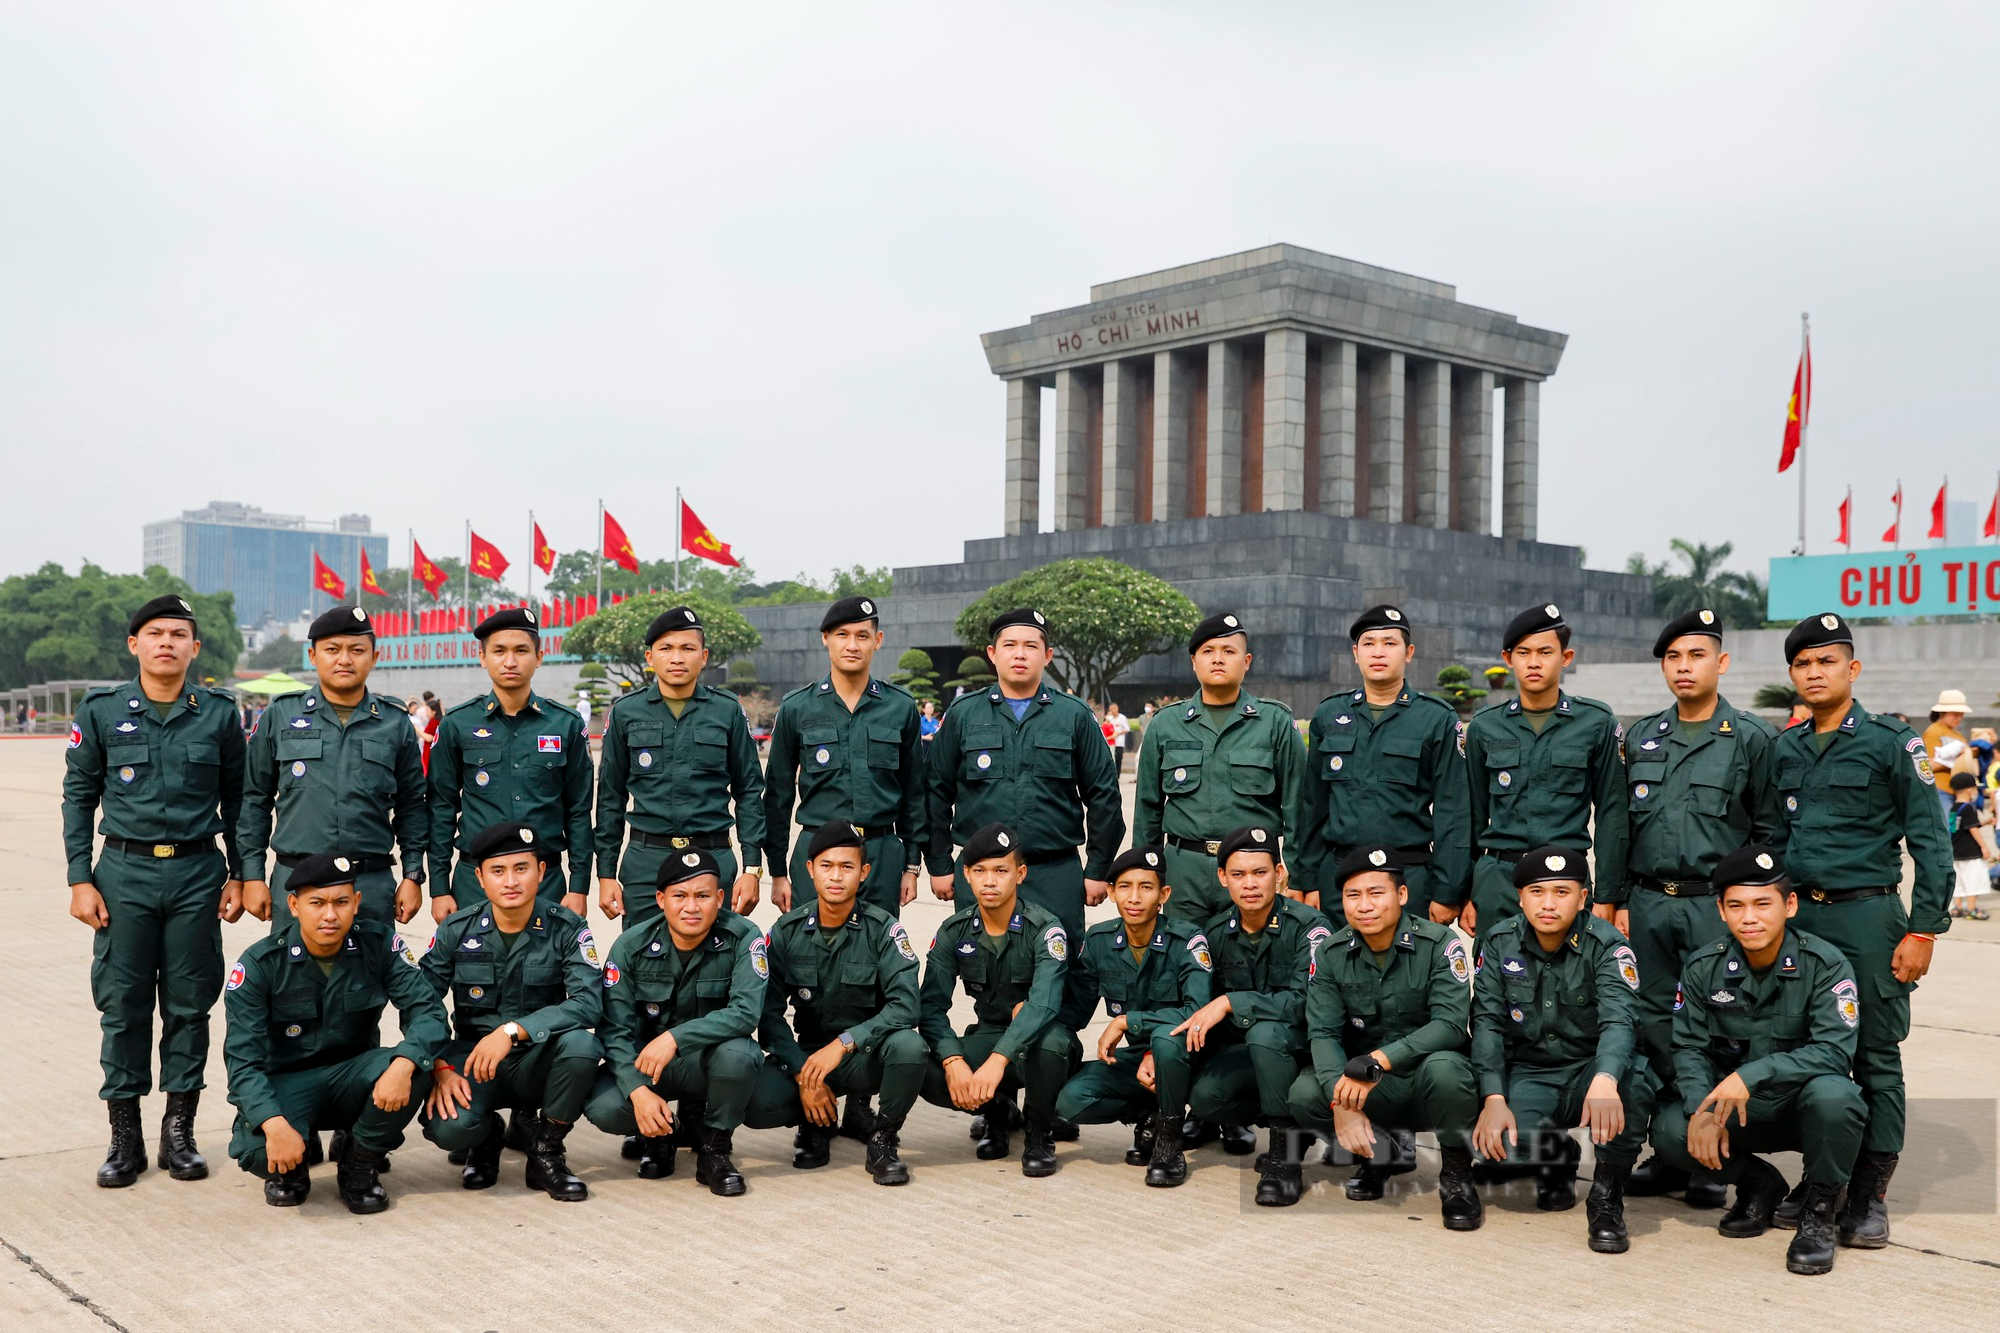 Hàng đoàn bạn bè quốc tế vào Lăng viếng Chủ tịch Hồ Chí Minh trong ngày sinh nhật Người  - Ảnh 7.